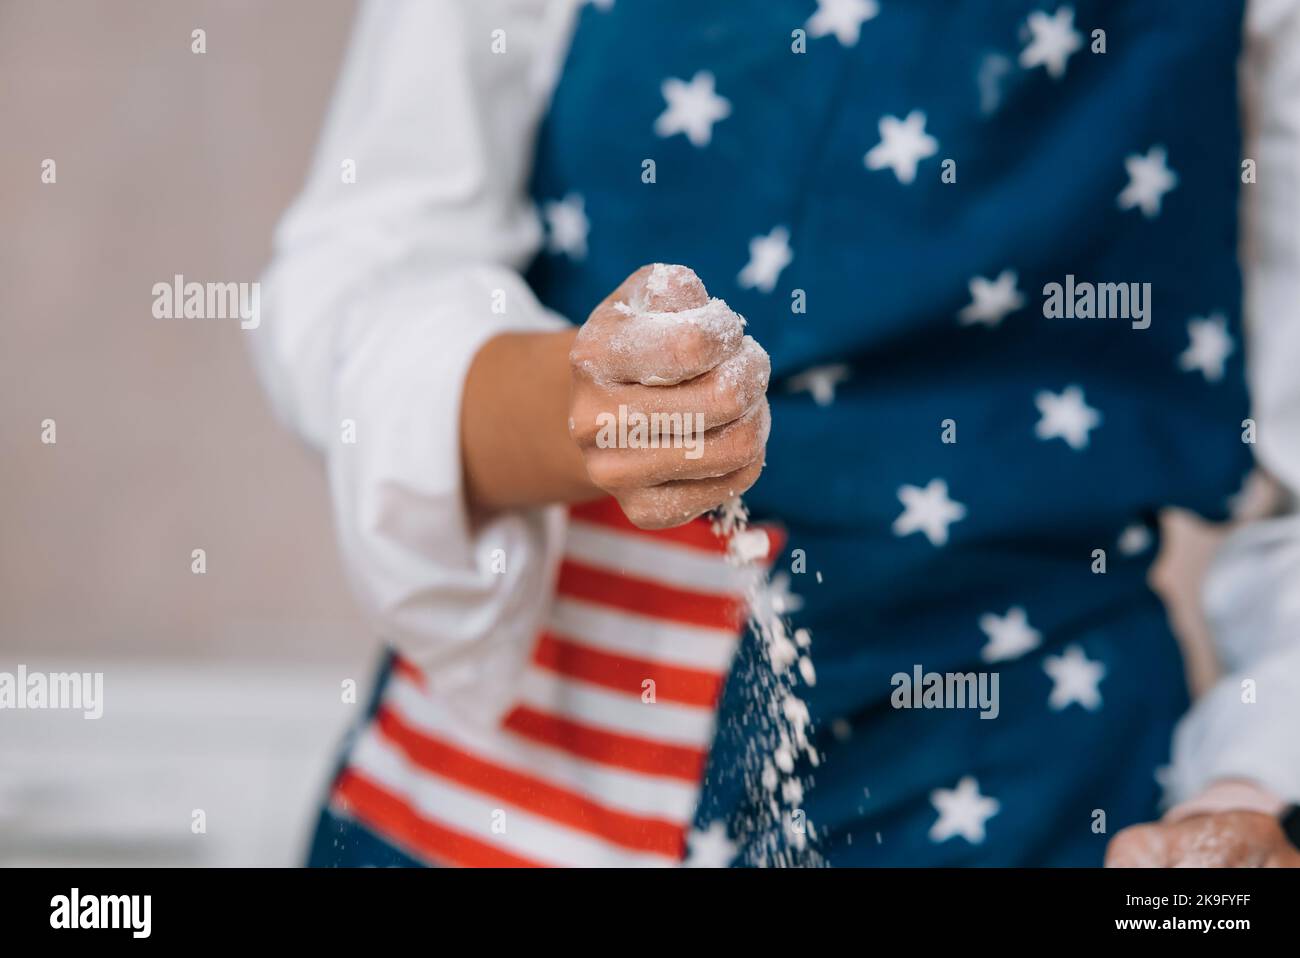 Die junge Hausfrau knetet mit ihren Händen auf einer Schürze Teig. Stockfoto